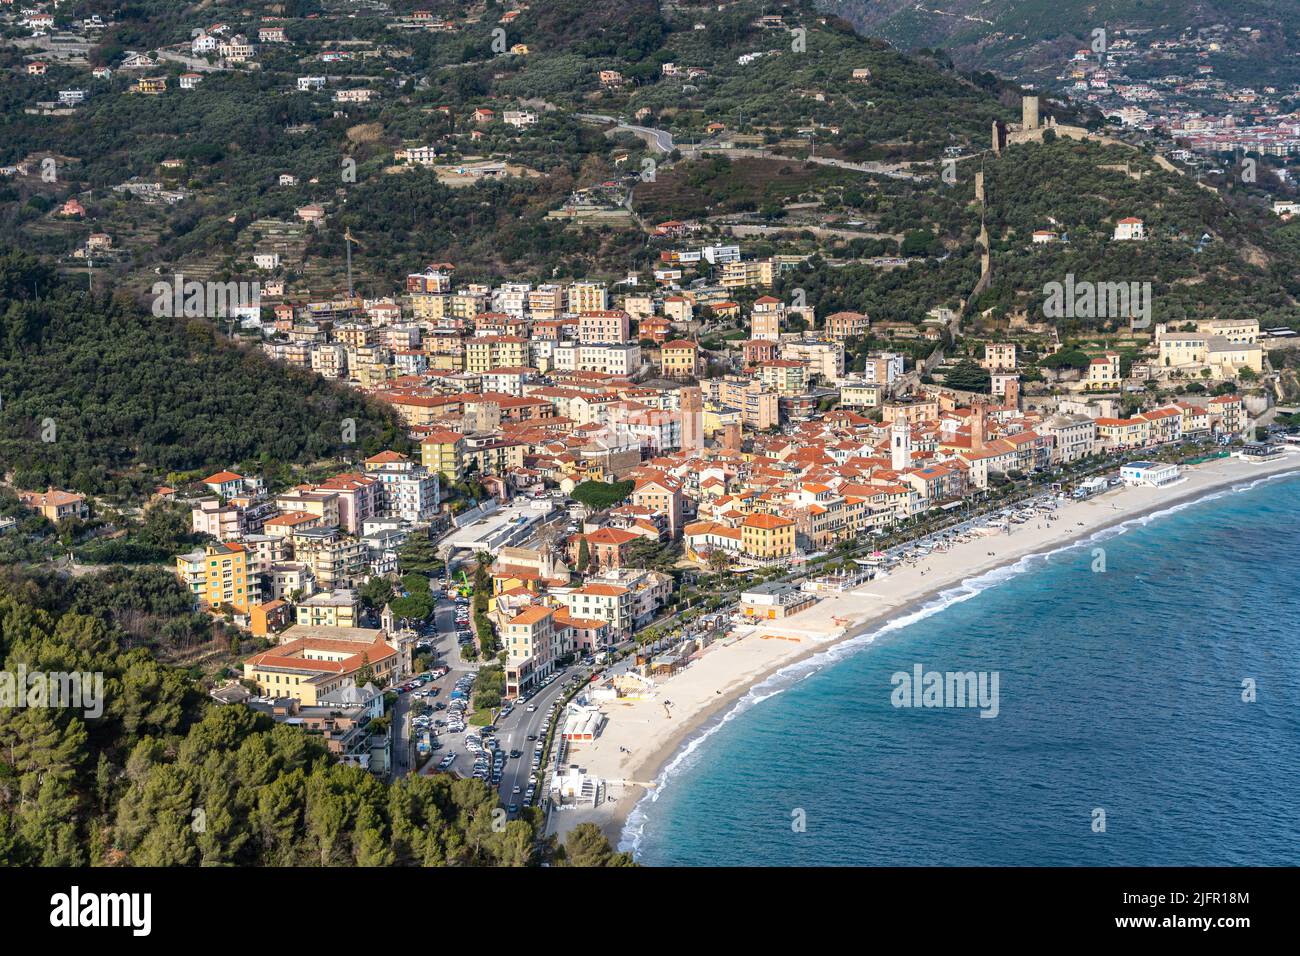 Vue aérienne de Noli, une ville pittoresque de la région de Ligurie près de Savona, en Italie Banque D'Images